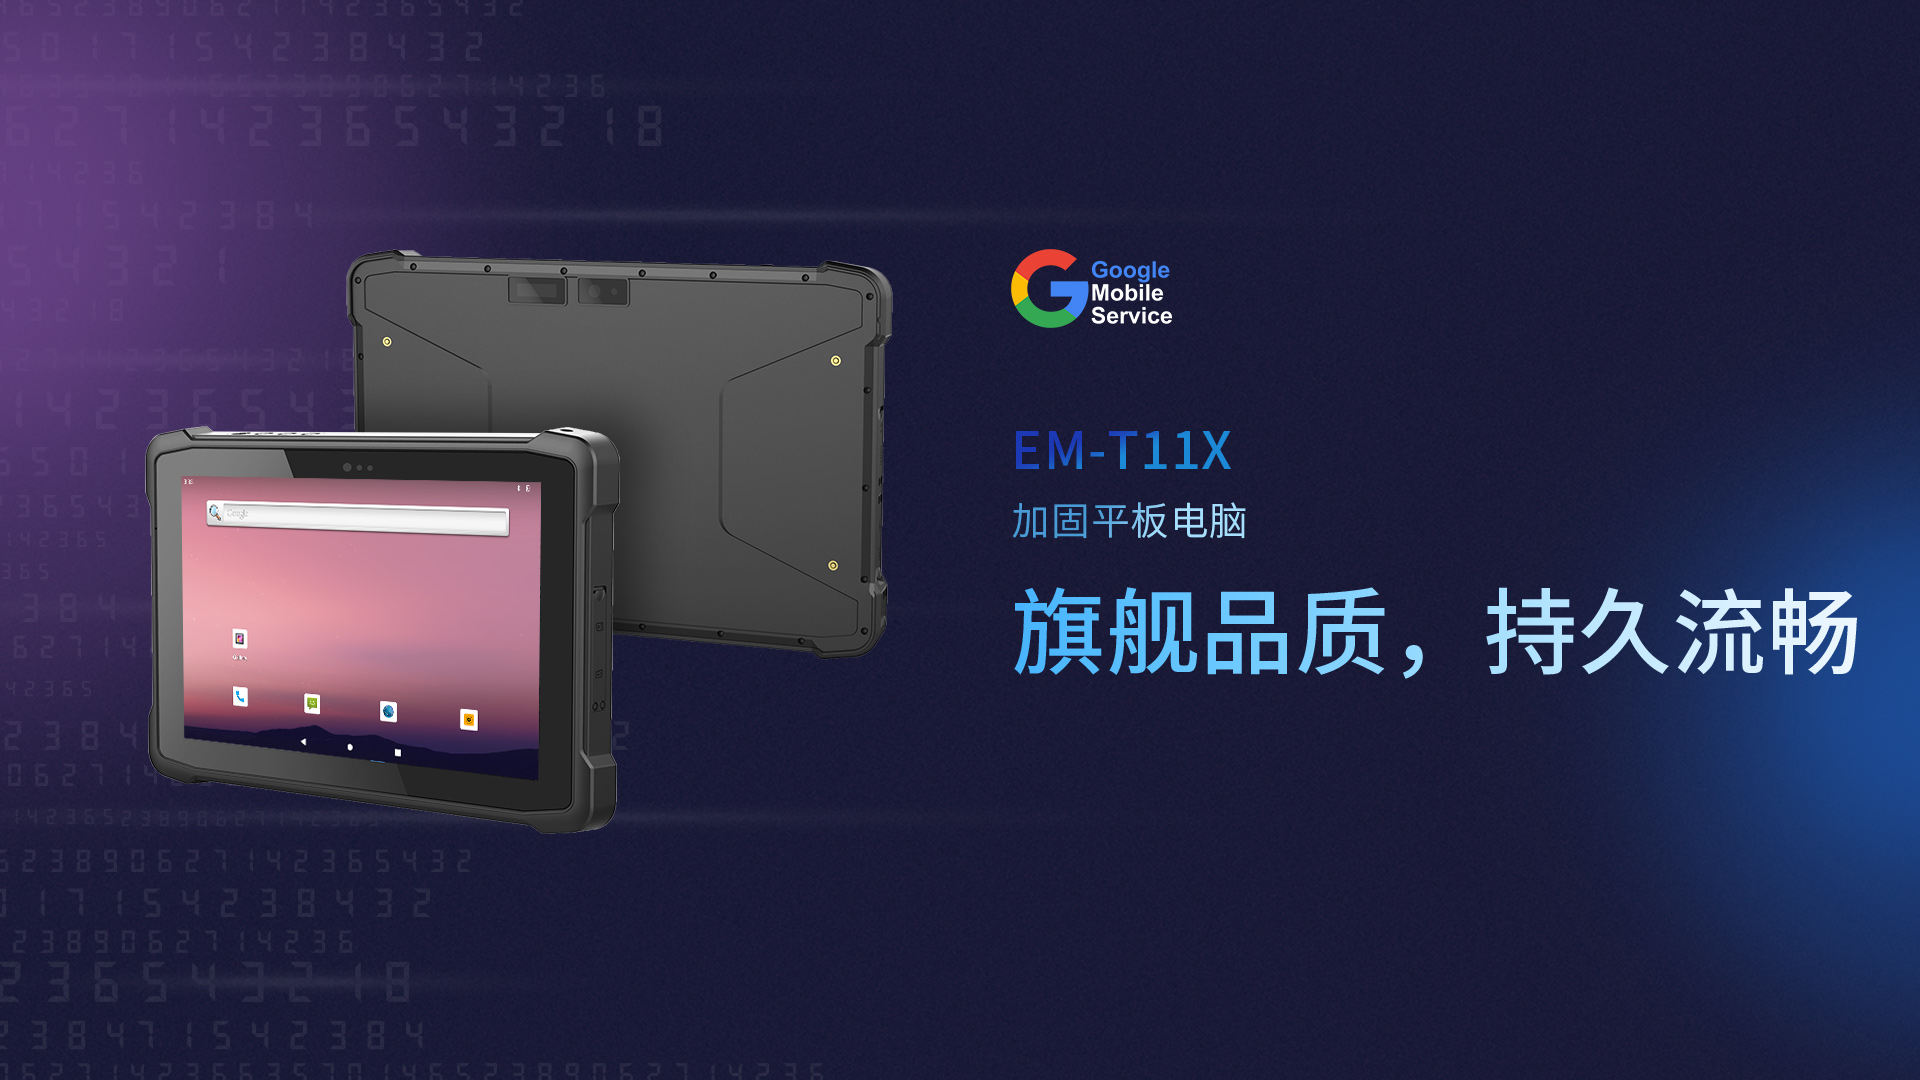 亿道三防平板电脑—EM-T11X：高性能、多功能的仓库盘点理想工具